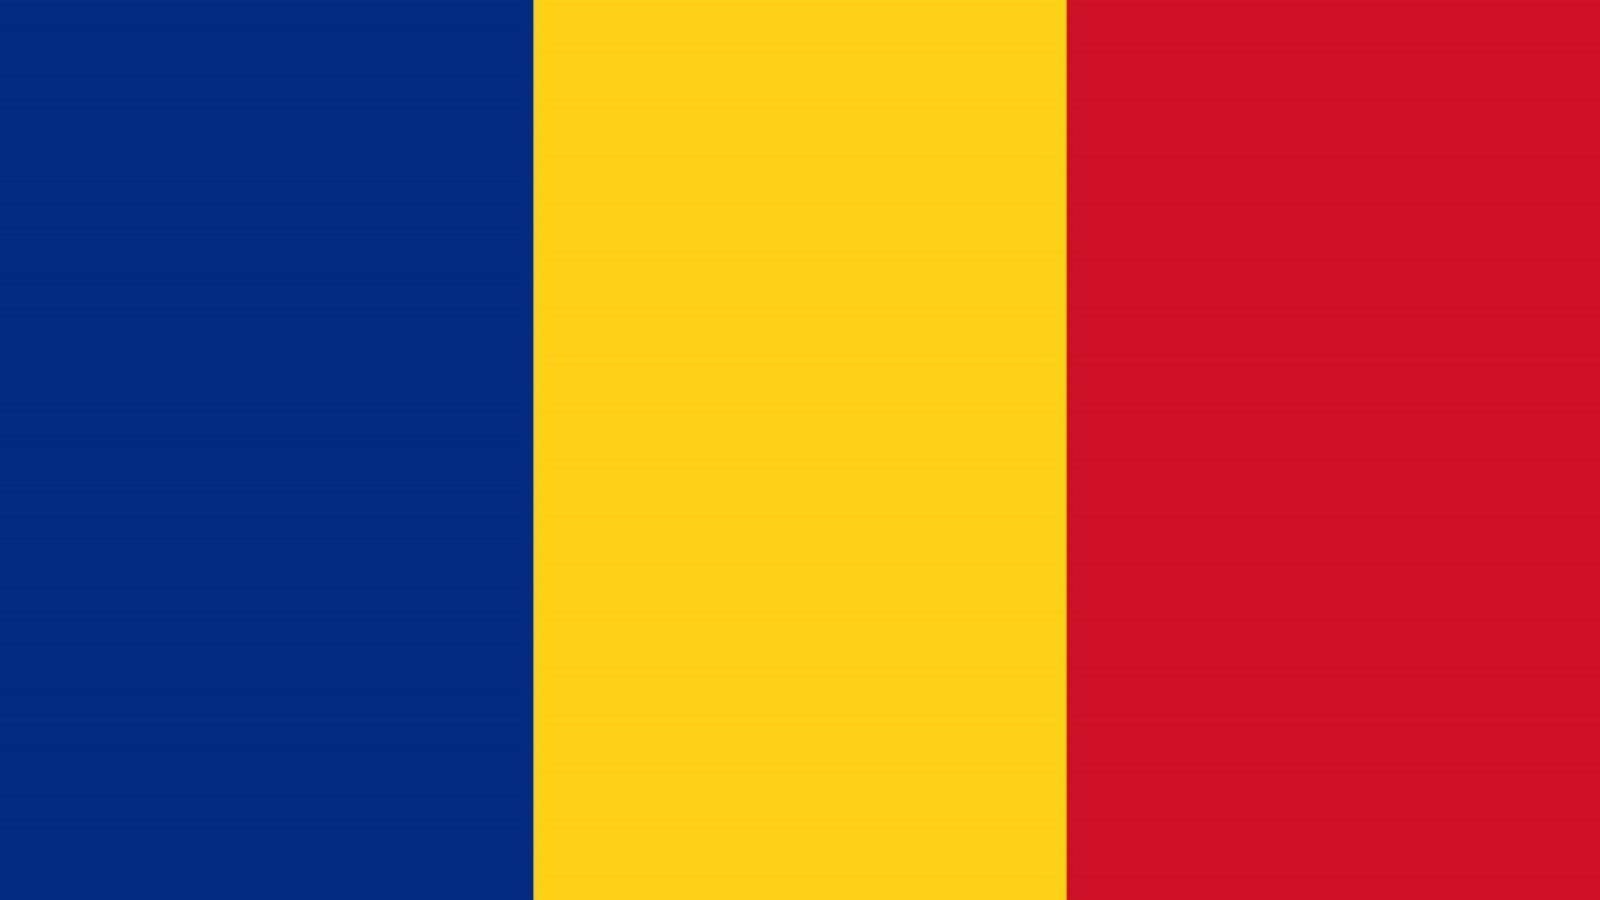 Den rumänska regeringen vägrar att tvinga rumänerna